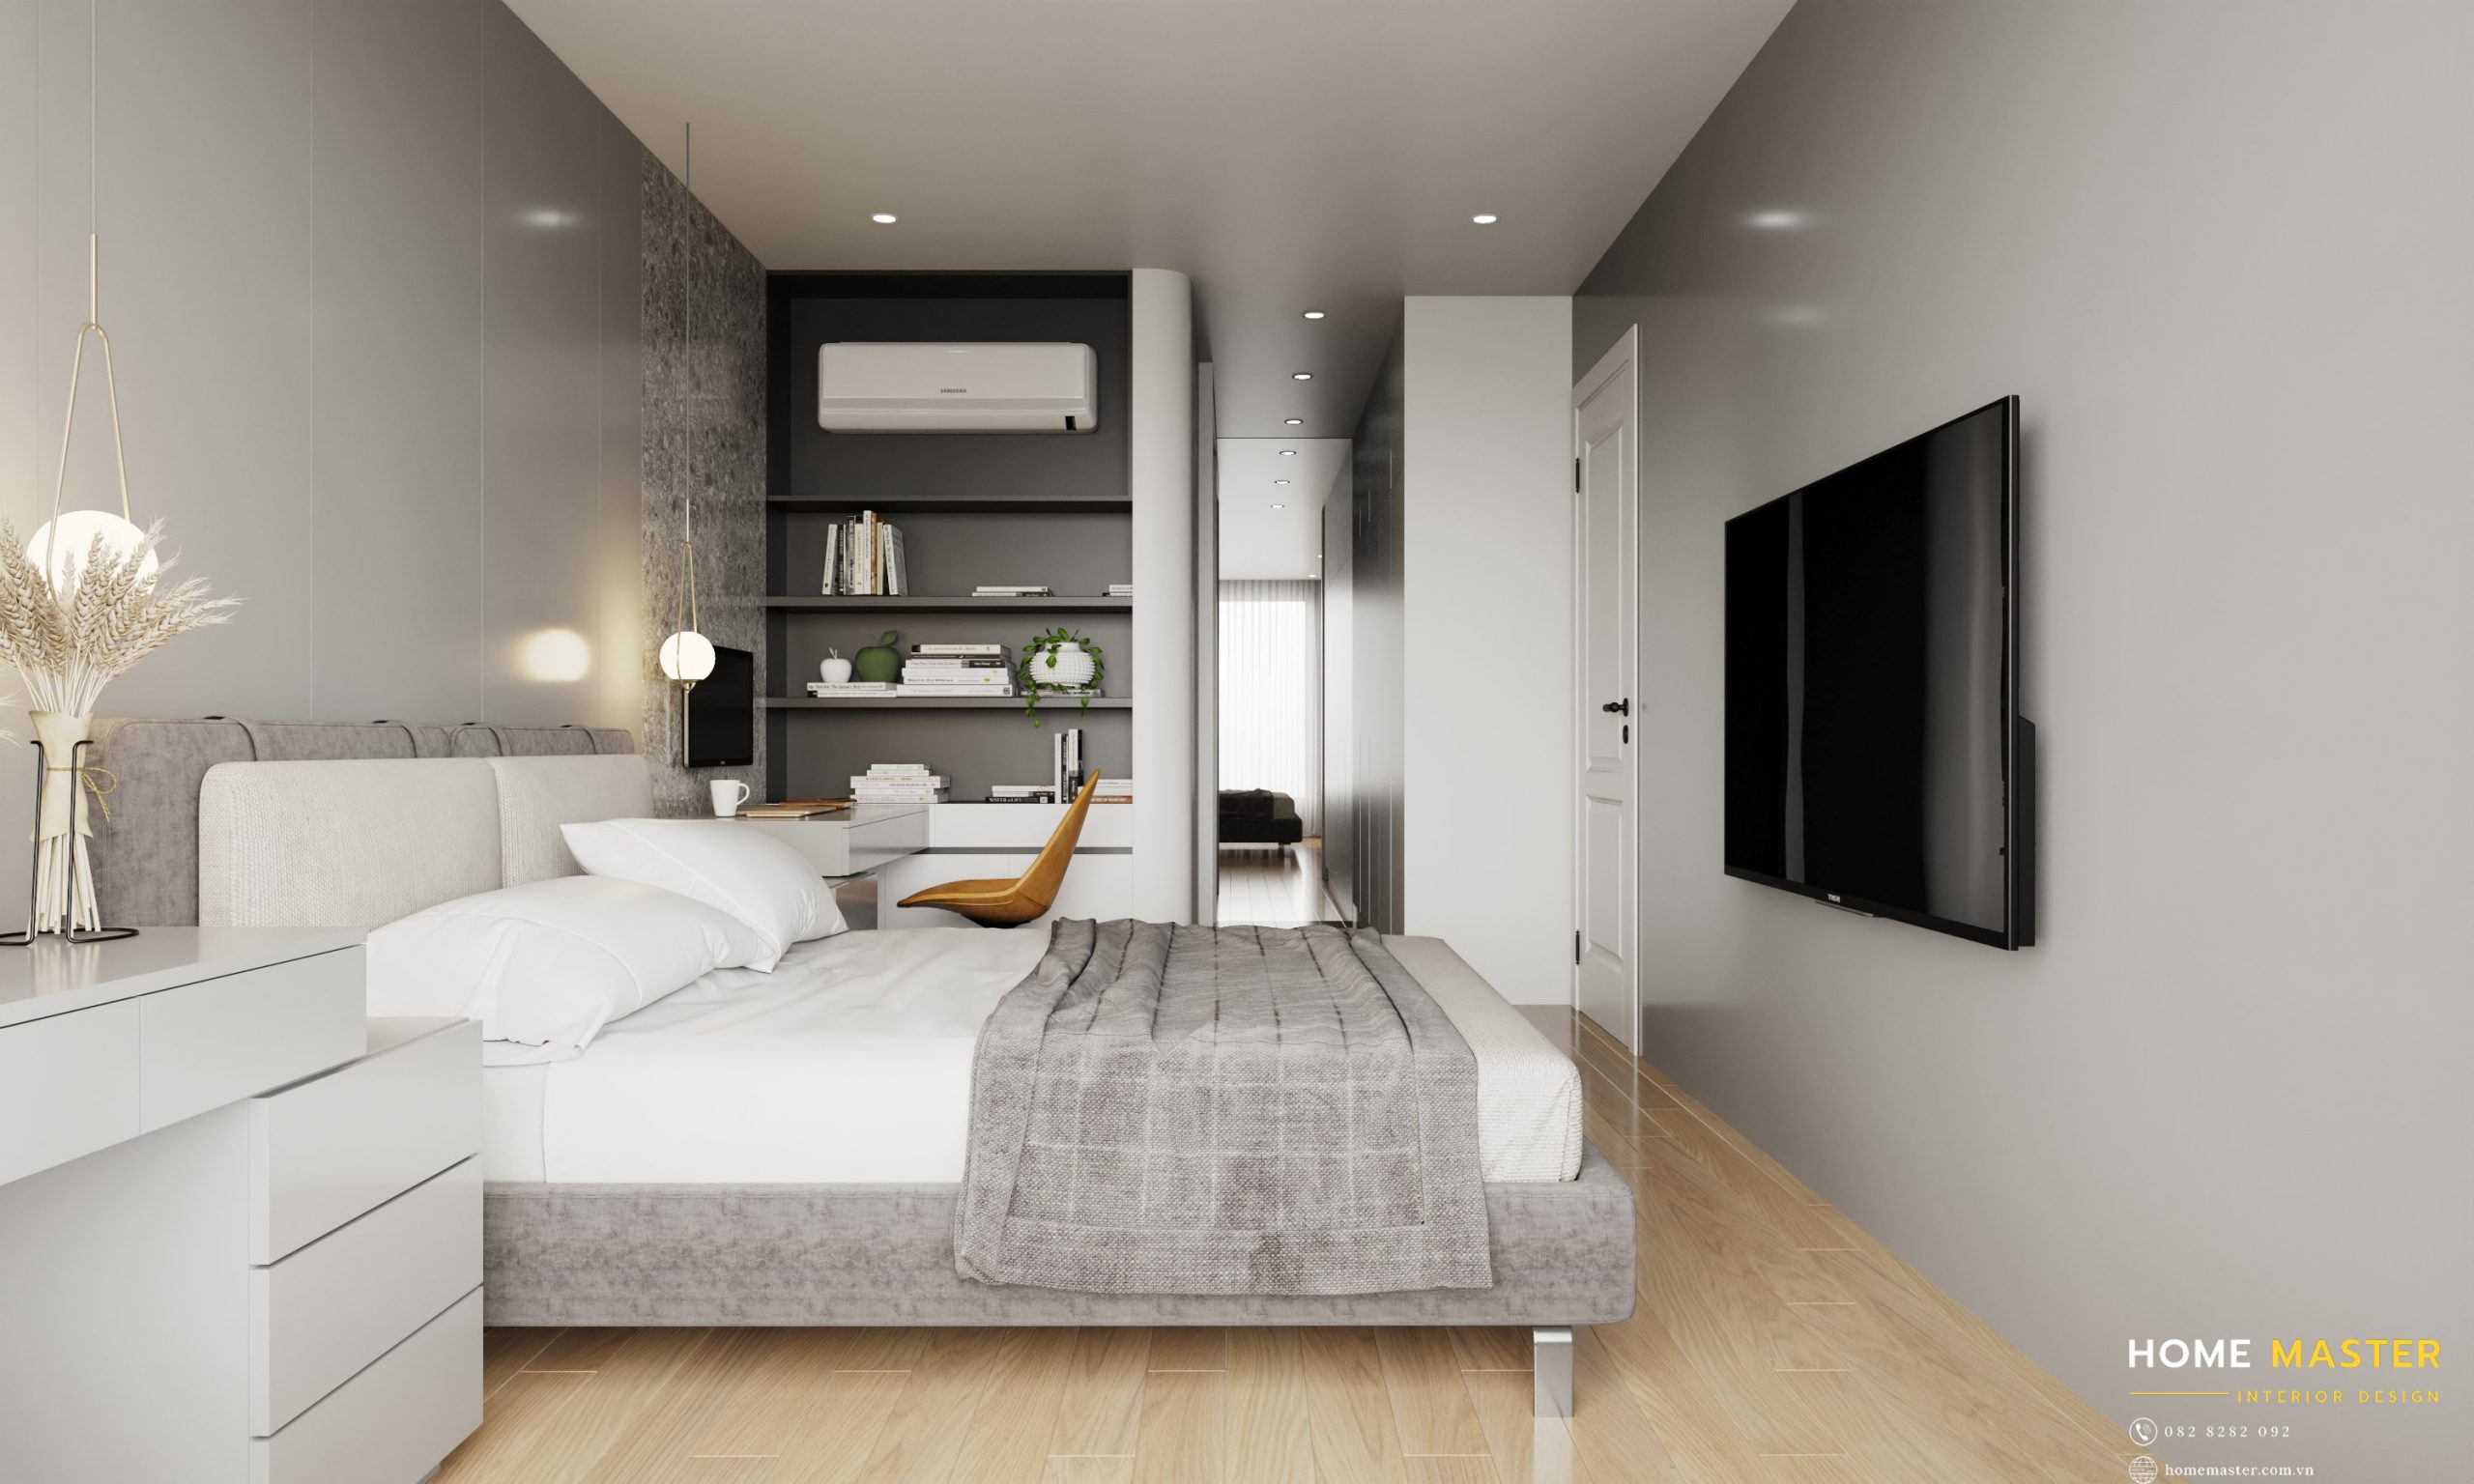 Lựa chọn đồ nội thất bố trí thông minh đem lại sự rộng rãi cho căn phòng.